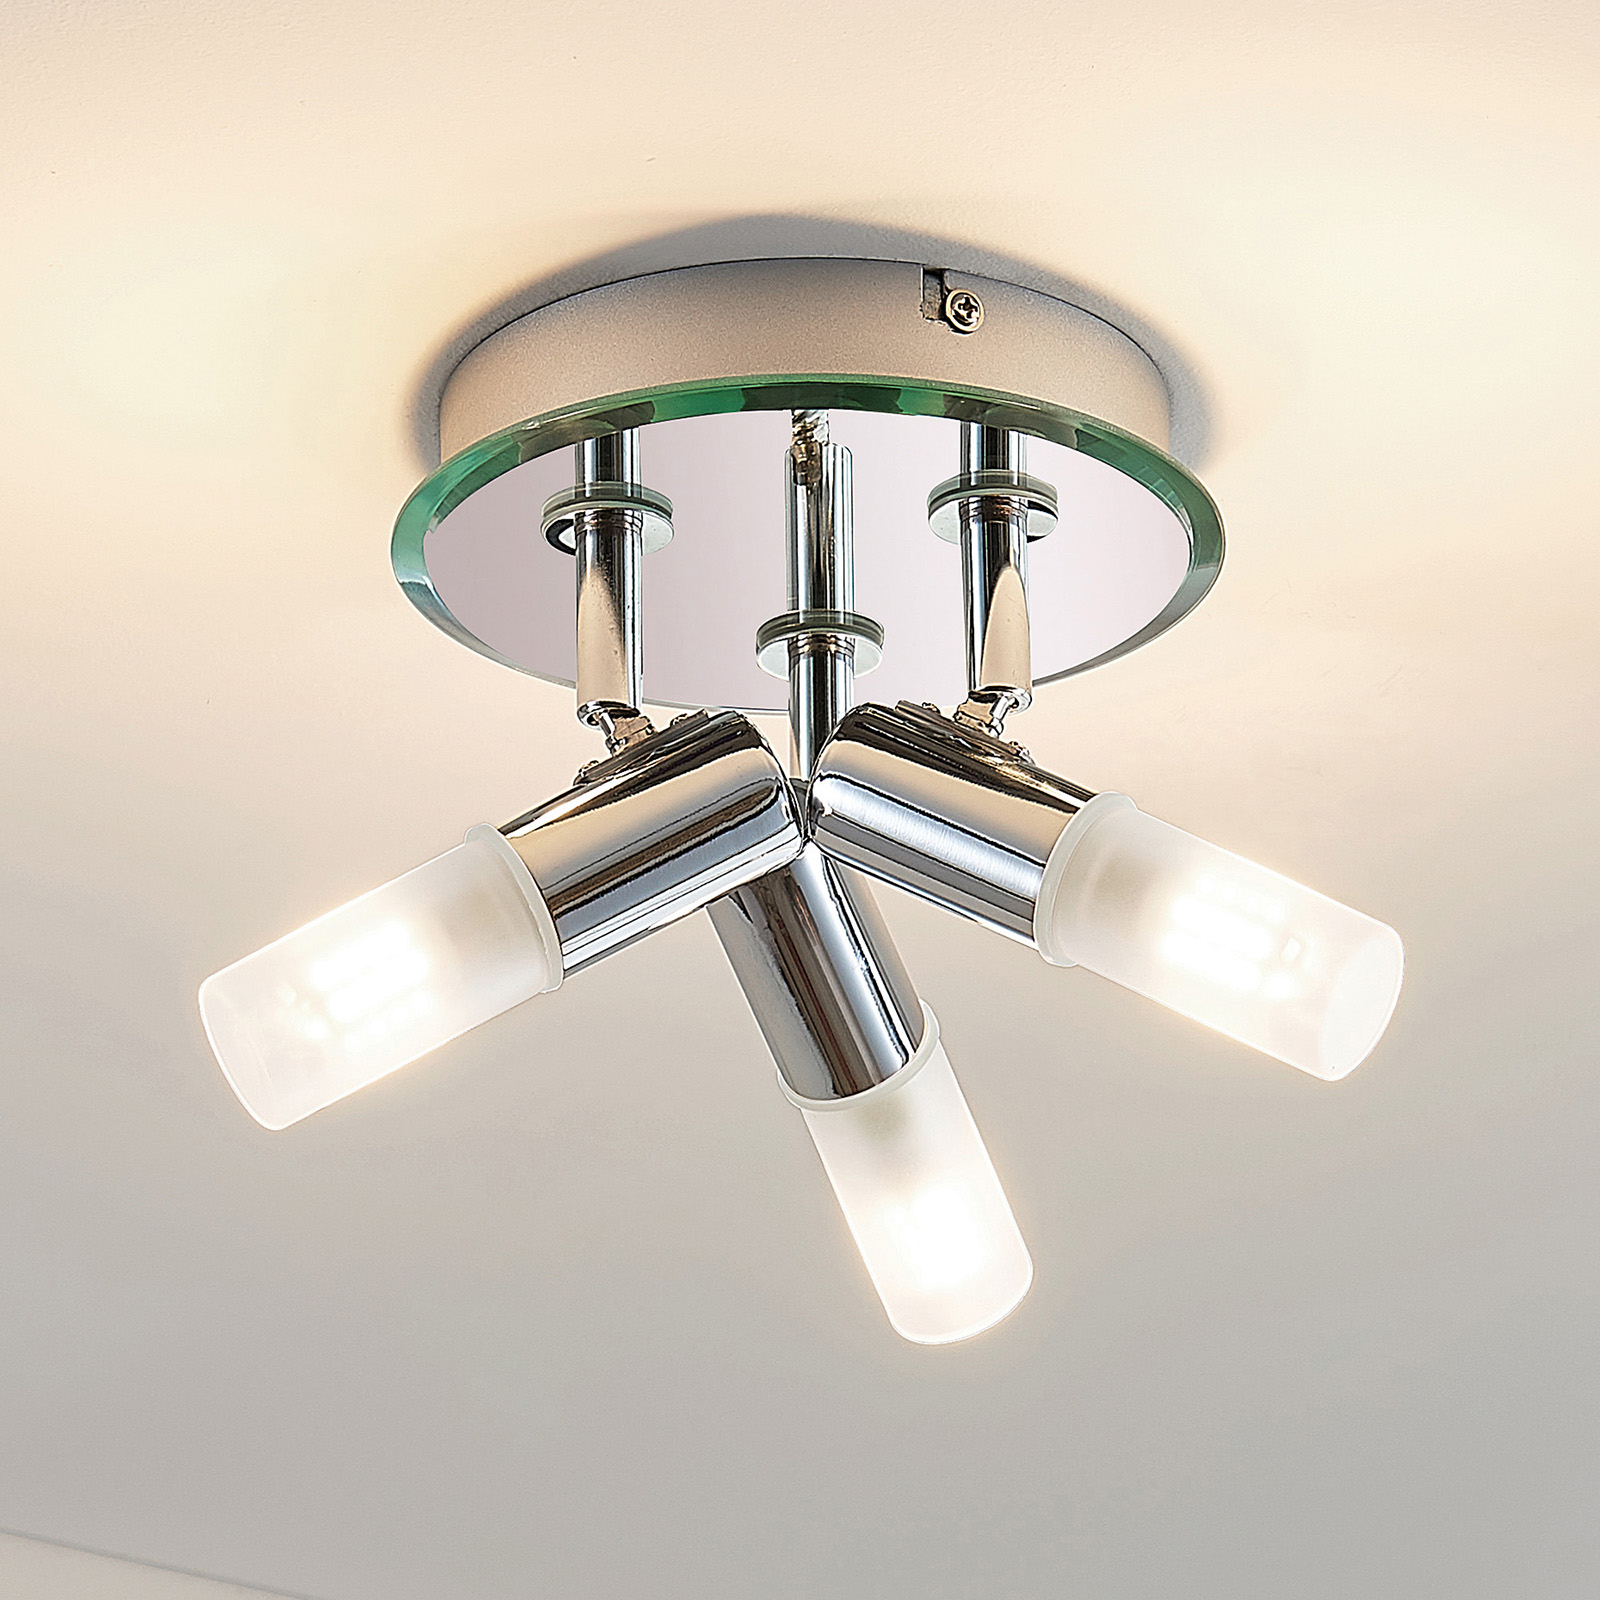 Zela bathroom ceiling light, 3-bulb in chrome